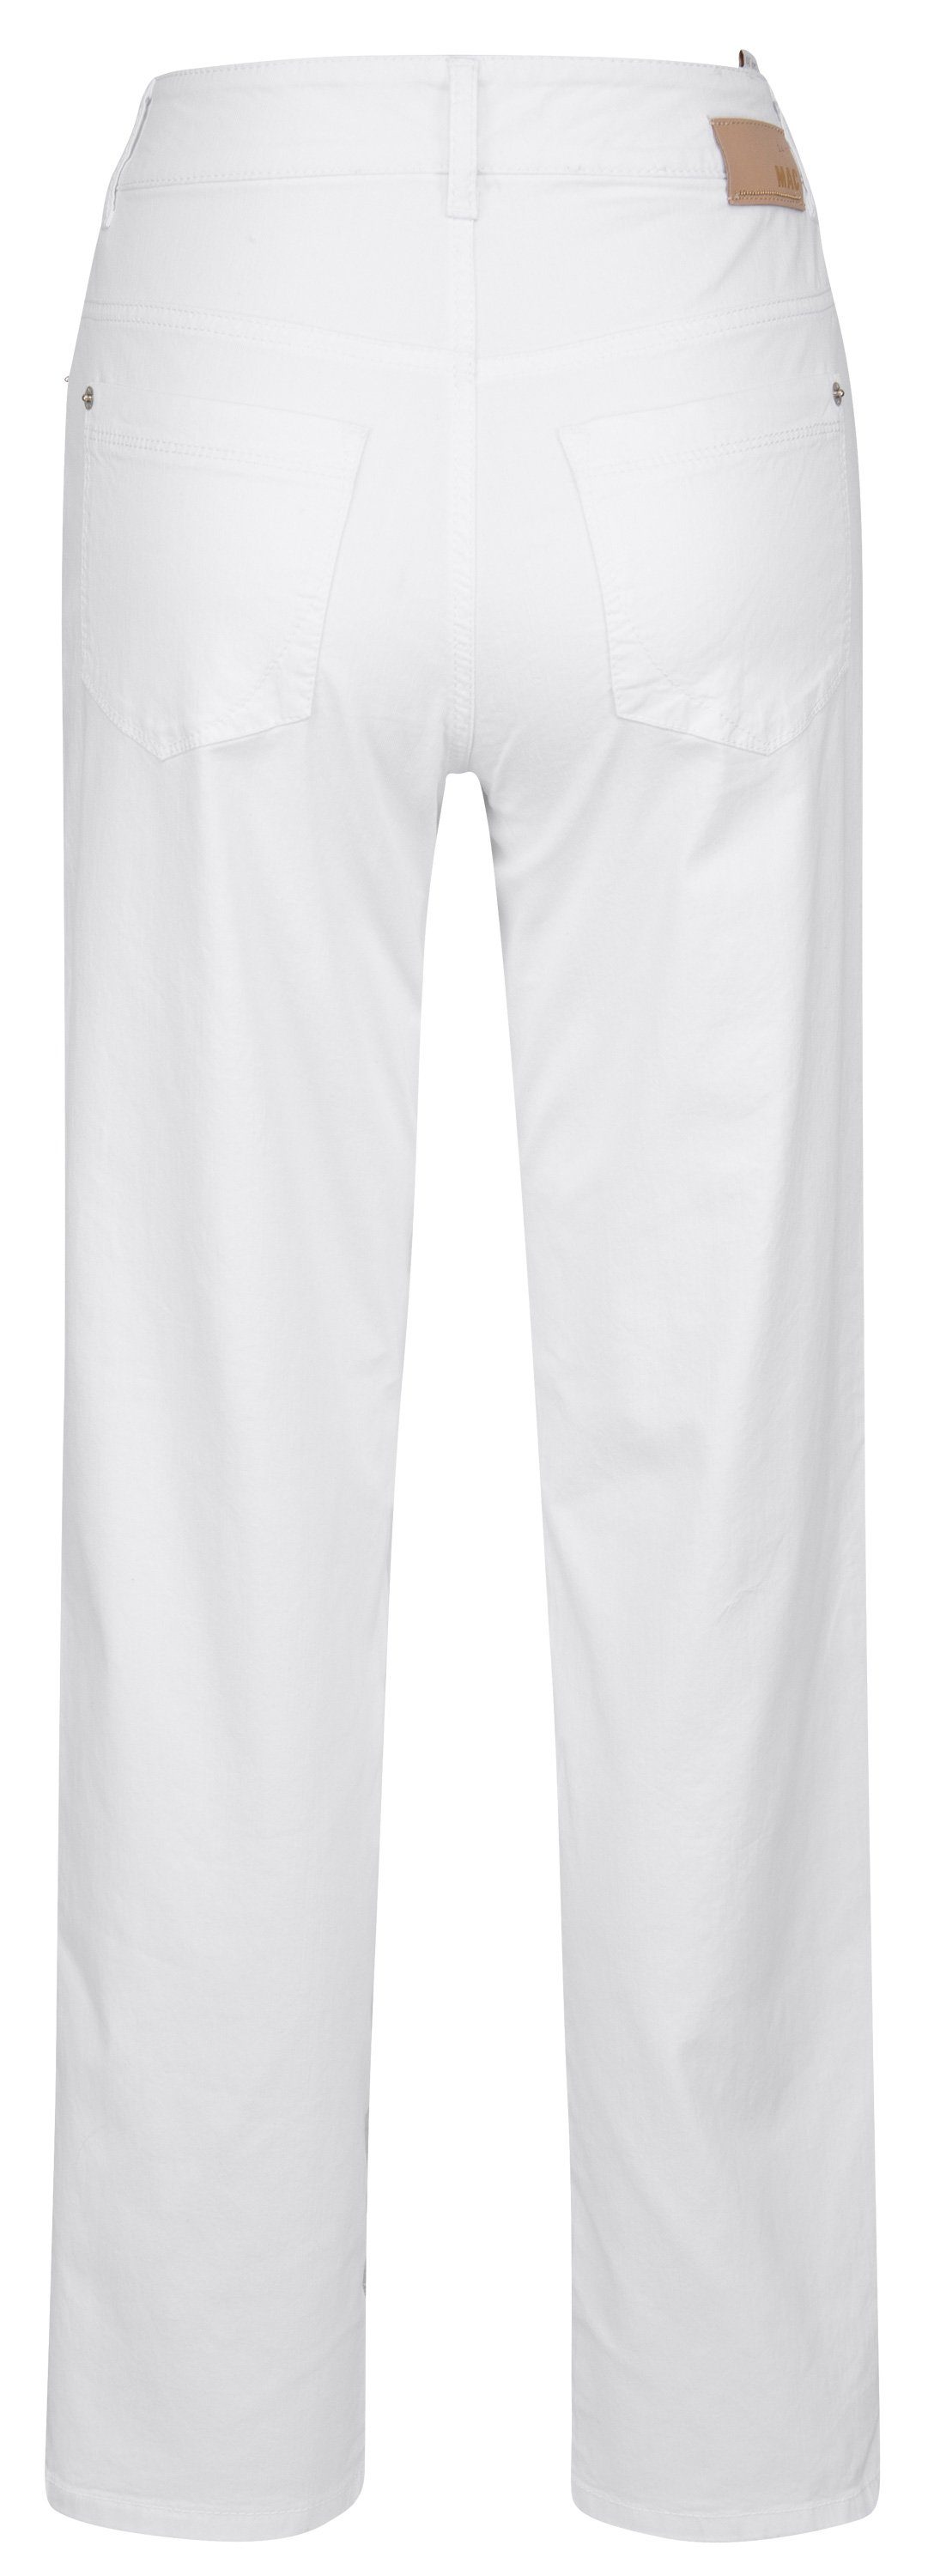 MAC Stretch-Jeans MAC GRACIA white 5381-00-0402 010